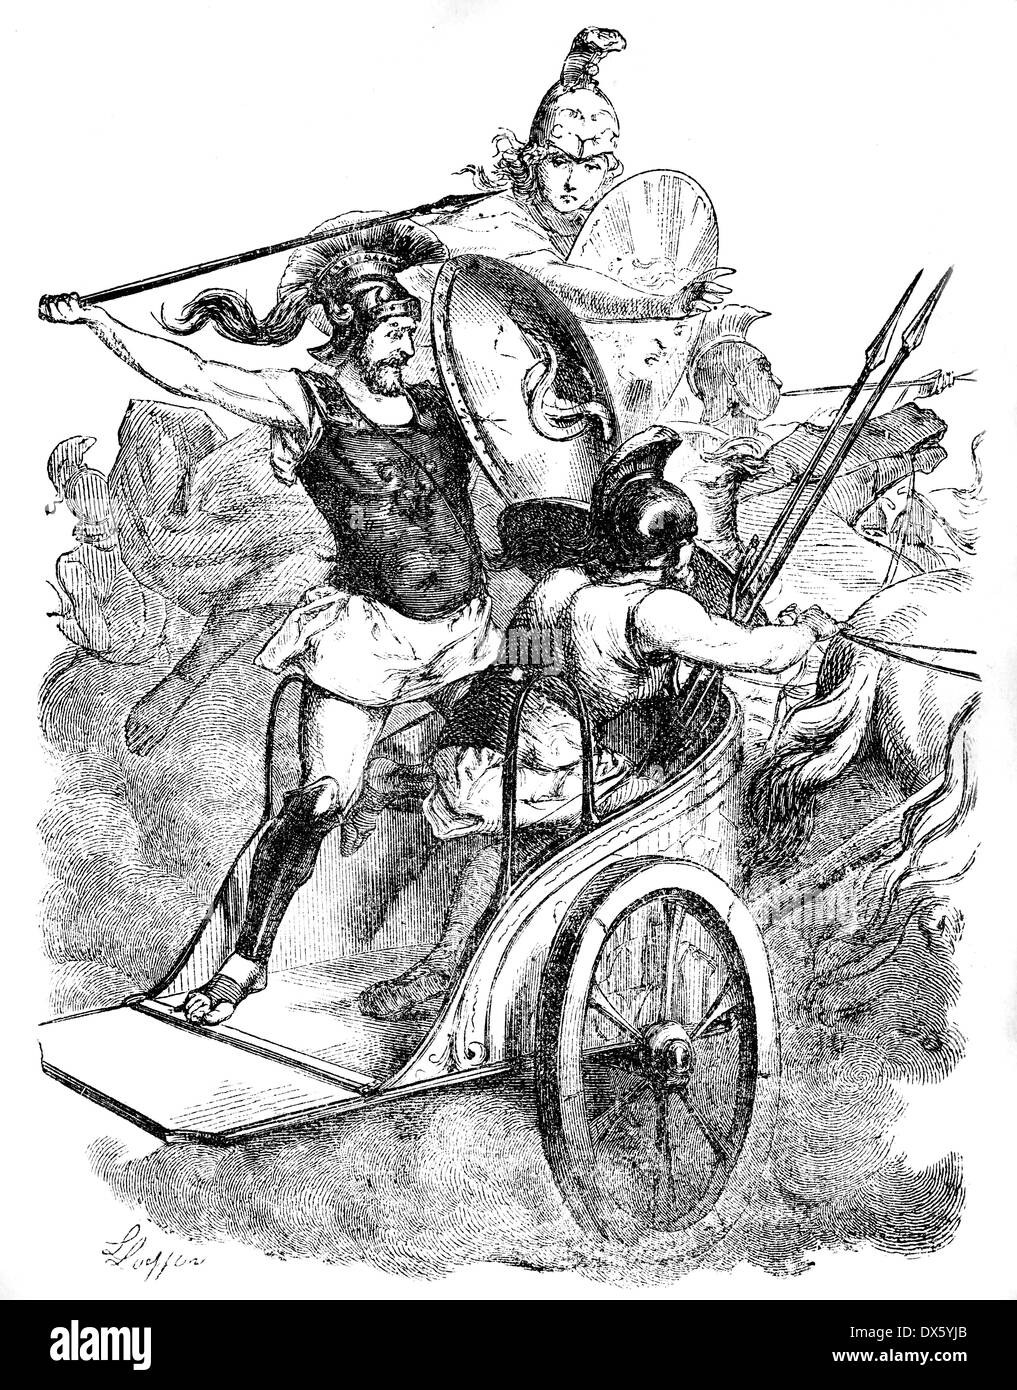 Diomedes auf Wagen, Illustration aus Buch datiert 1878 Stockfoto